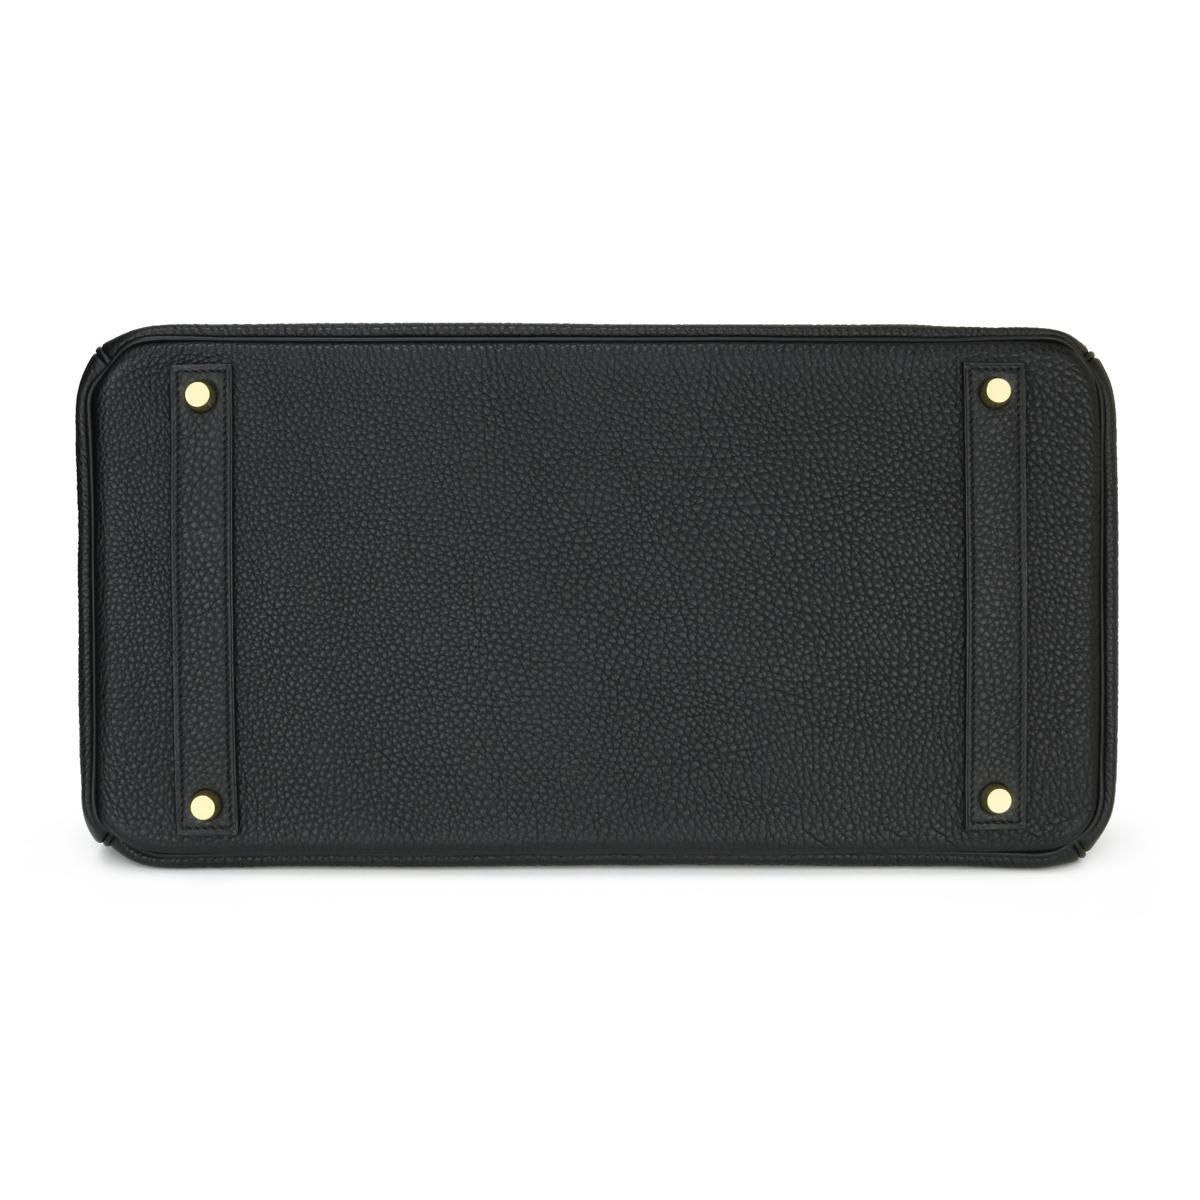 Hermès Birkin Bag 40cm Black Togo Leather with Gold Hardware Stamp N 2010 2